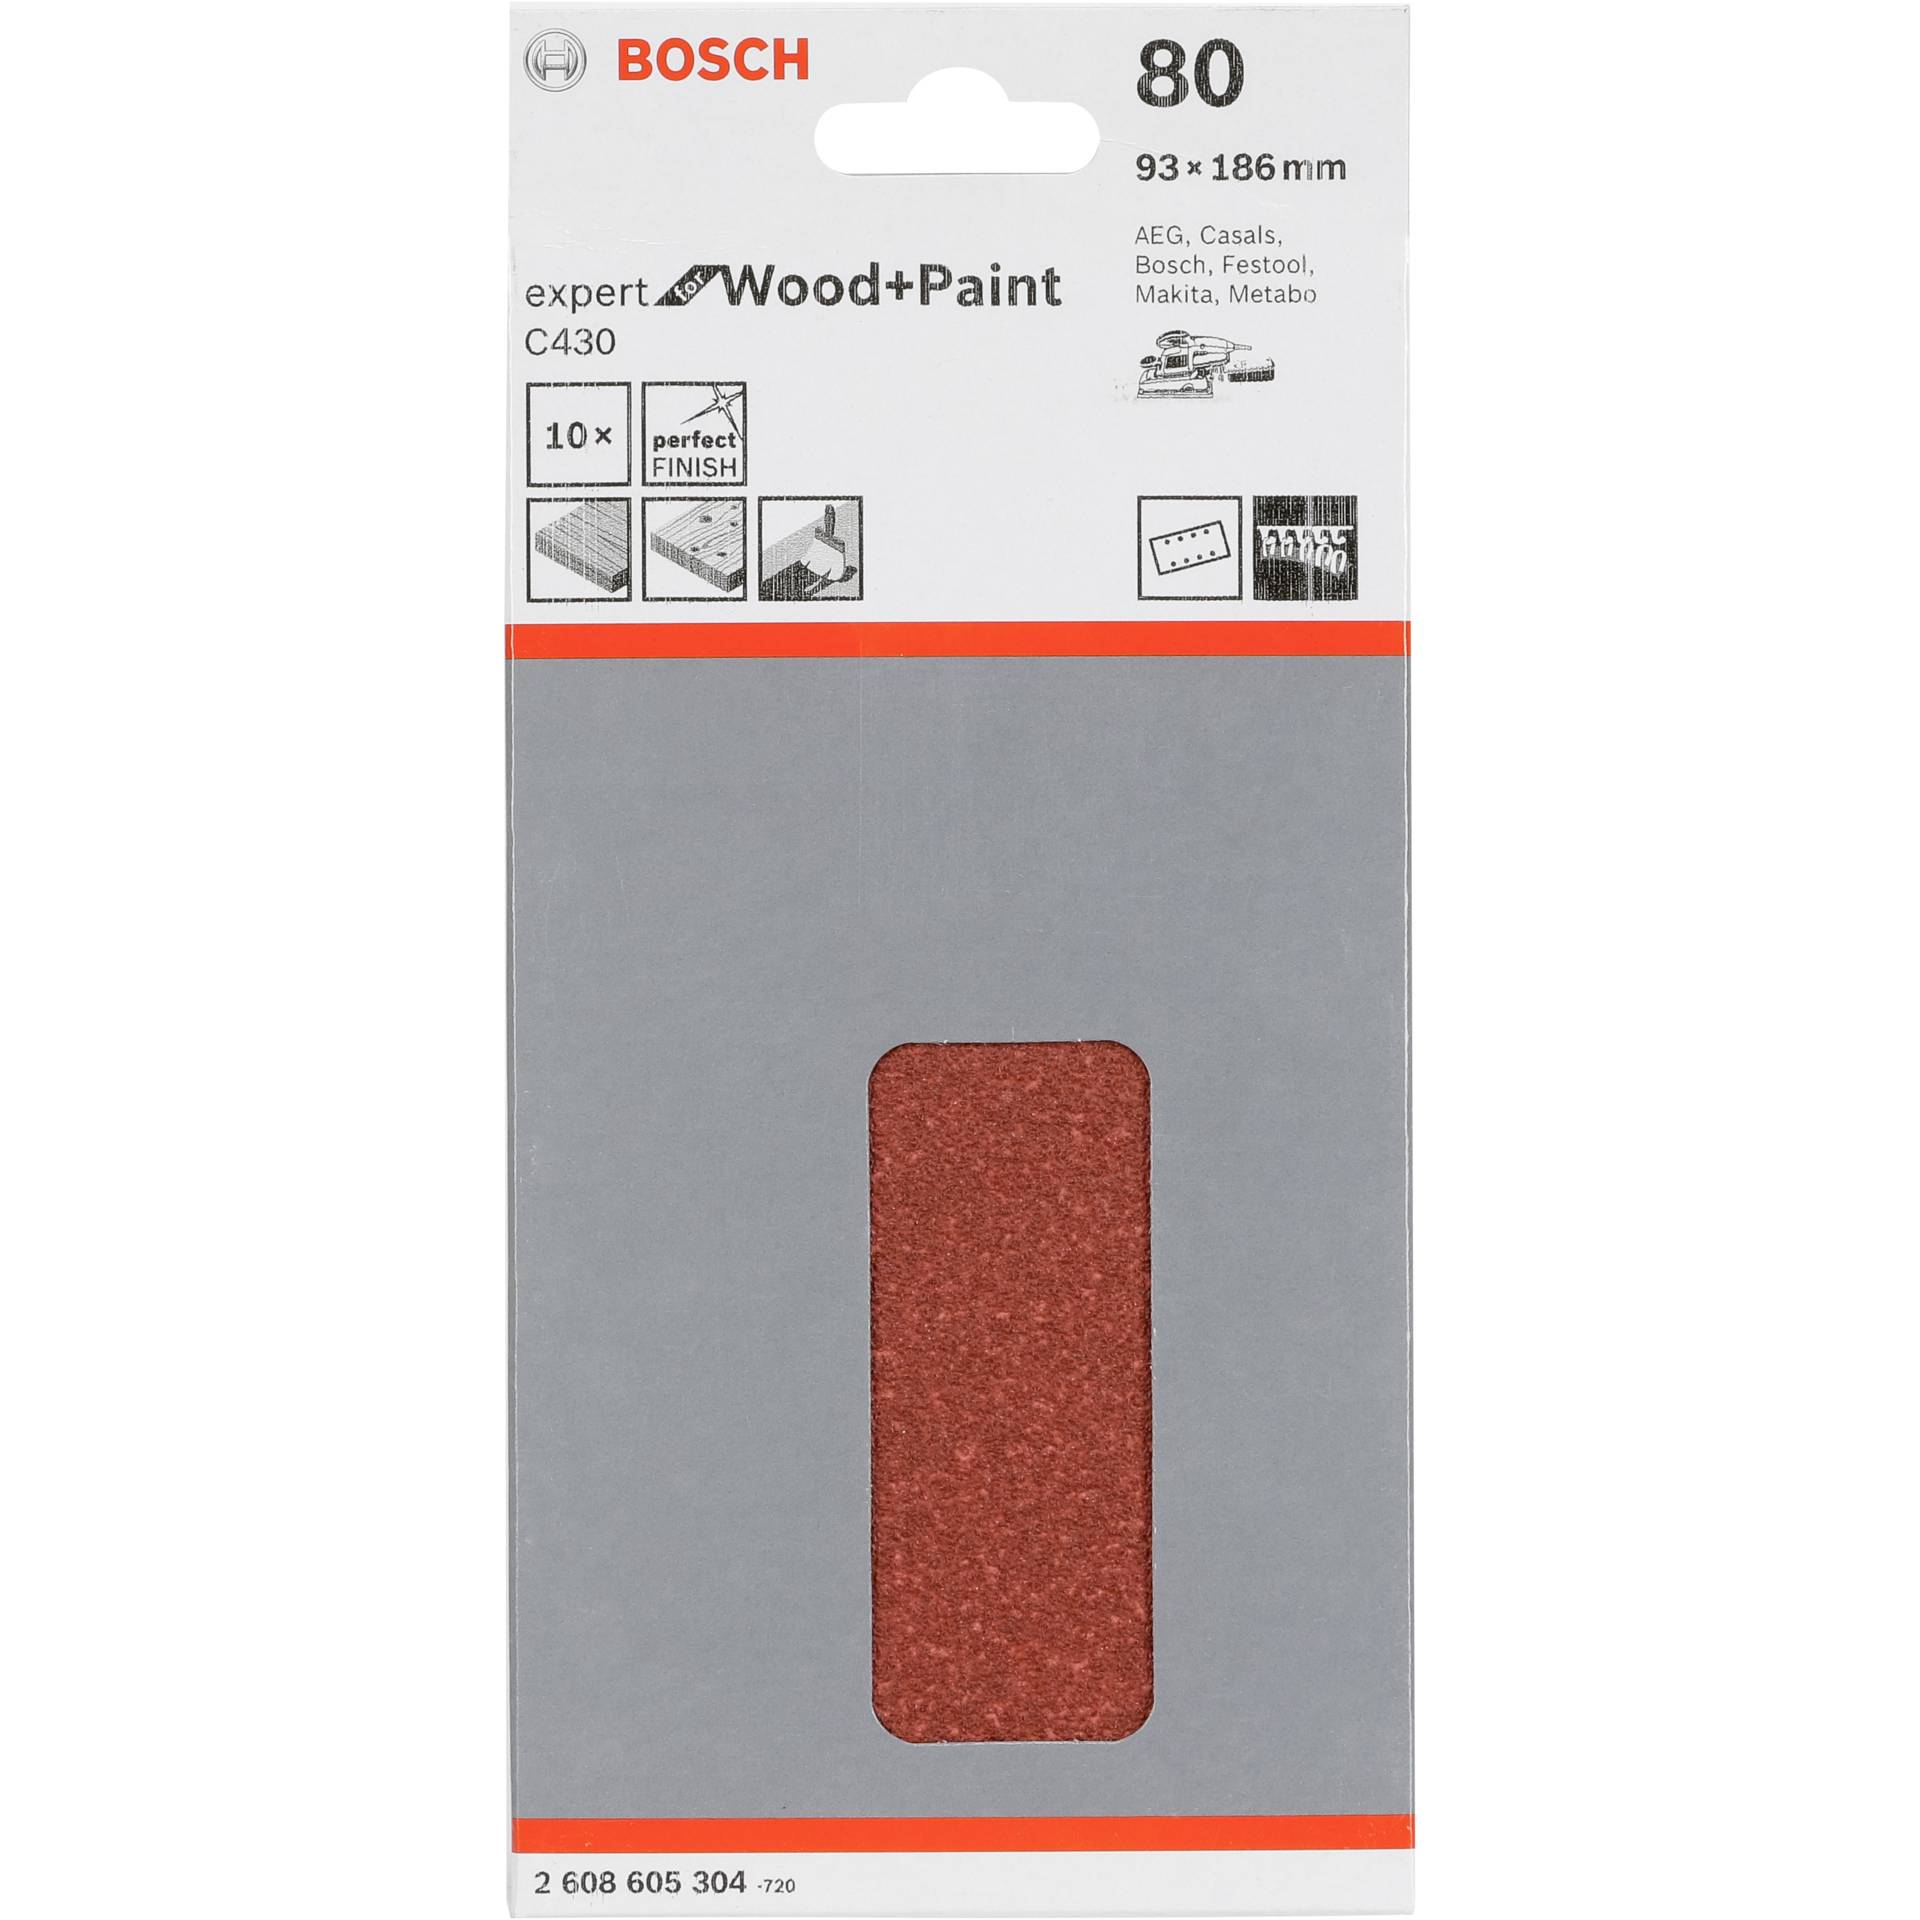 Bosch foglio abras. C 430 legno+ vernice 93x186MM grana 80 1